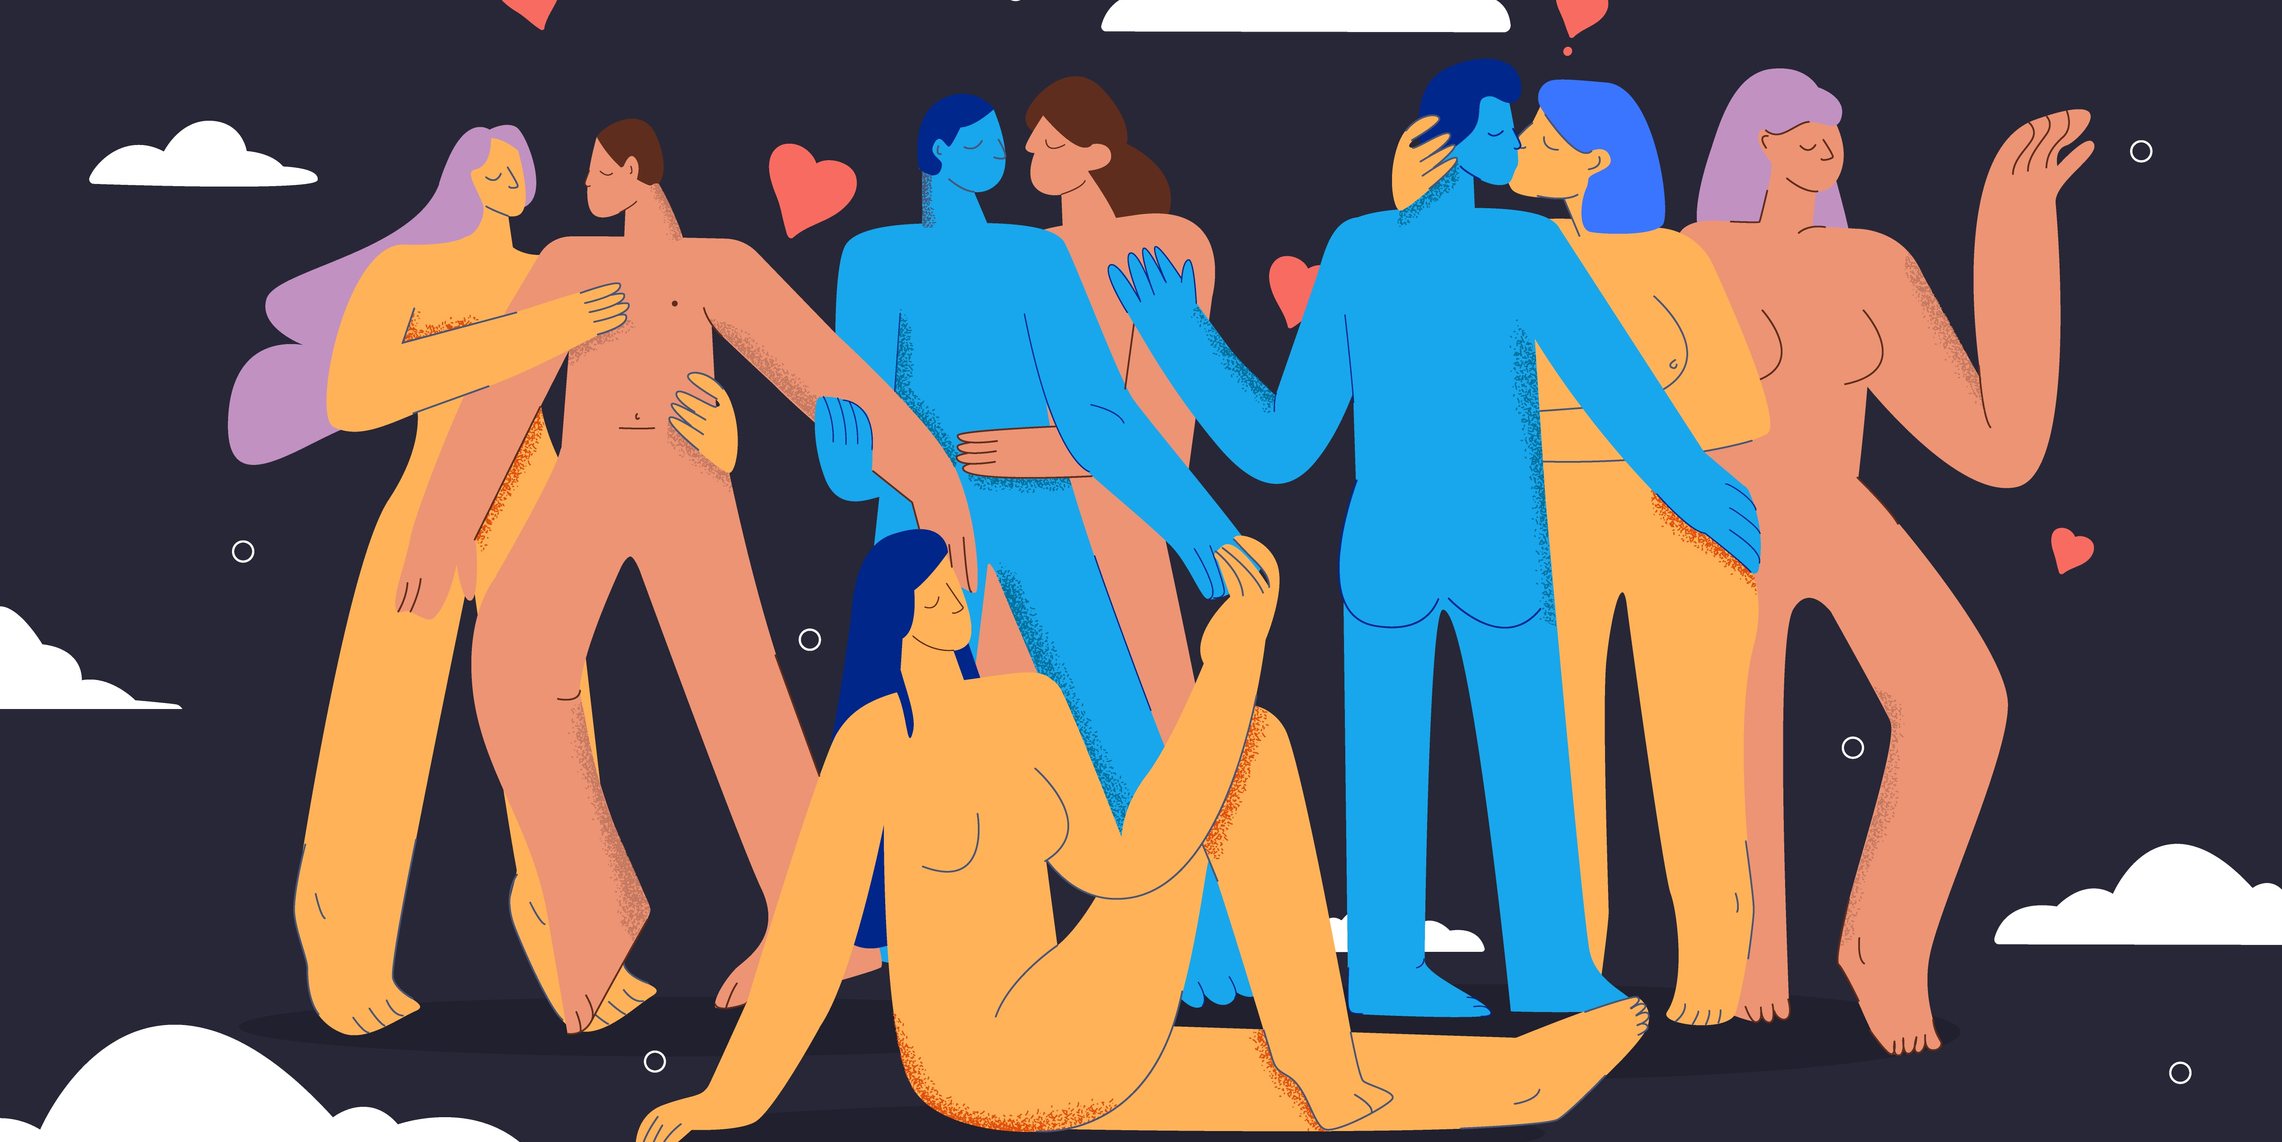 O estudo sobre o prazer sexual foi desenvolvido pelo pelo MUSEX-Museu Pedagógico do Sexo, o Gerador e o Mestrado Transdisciplinar de Sexologia da Universidade Lusófona e a Sociedade Portuguesa de Sexologia Clínica